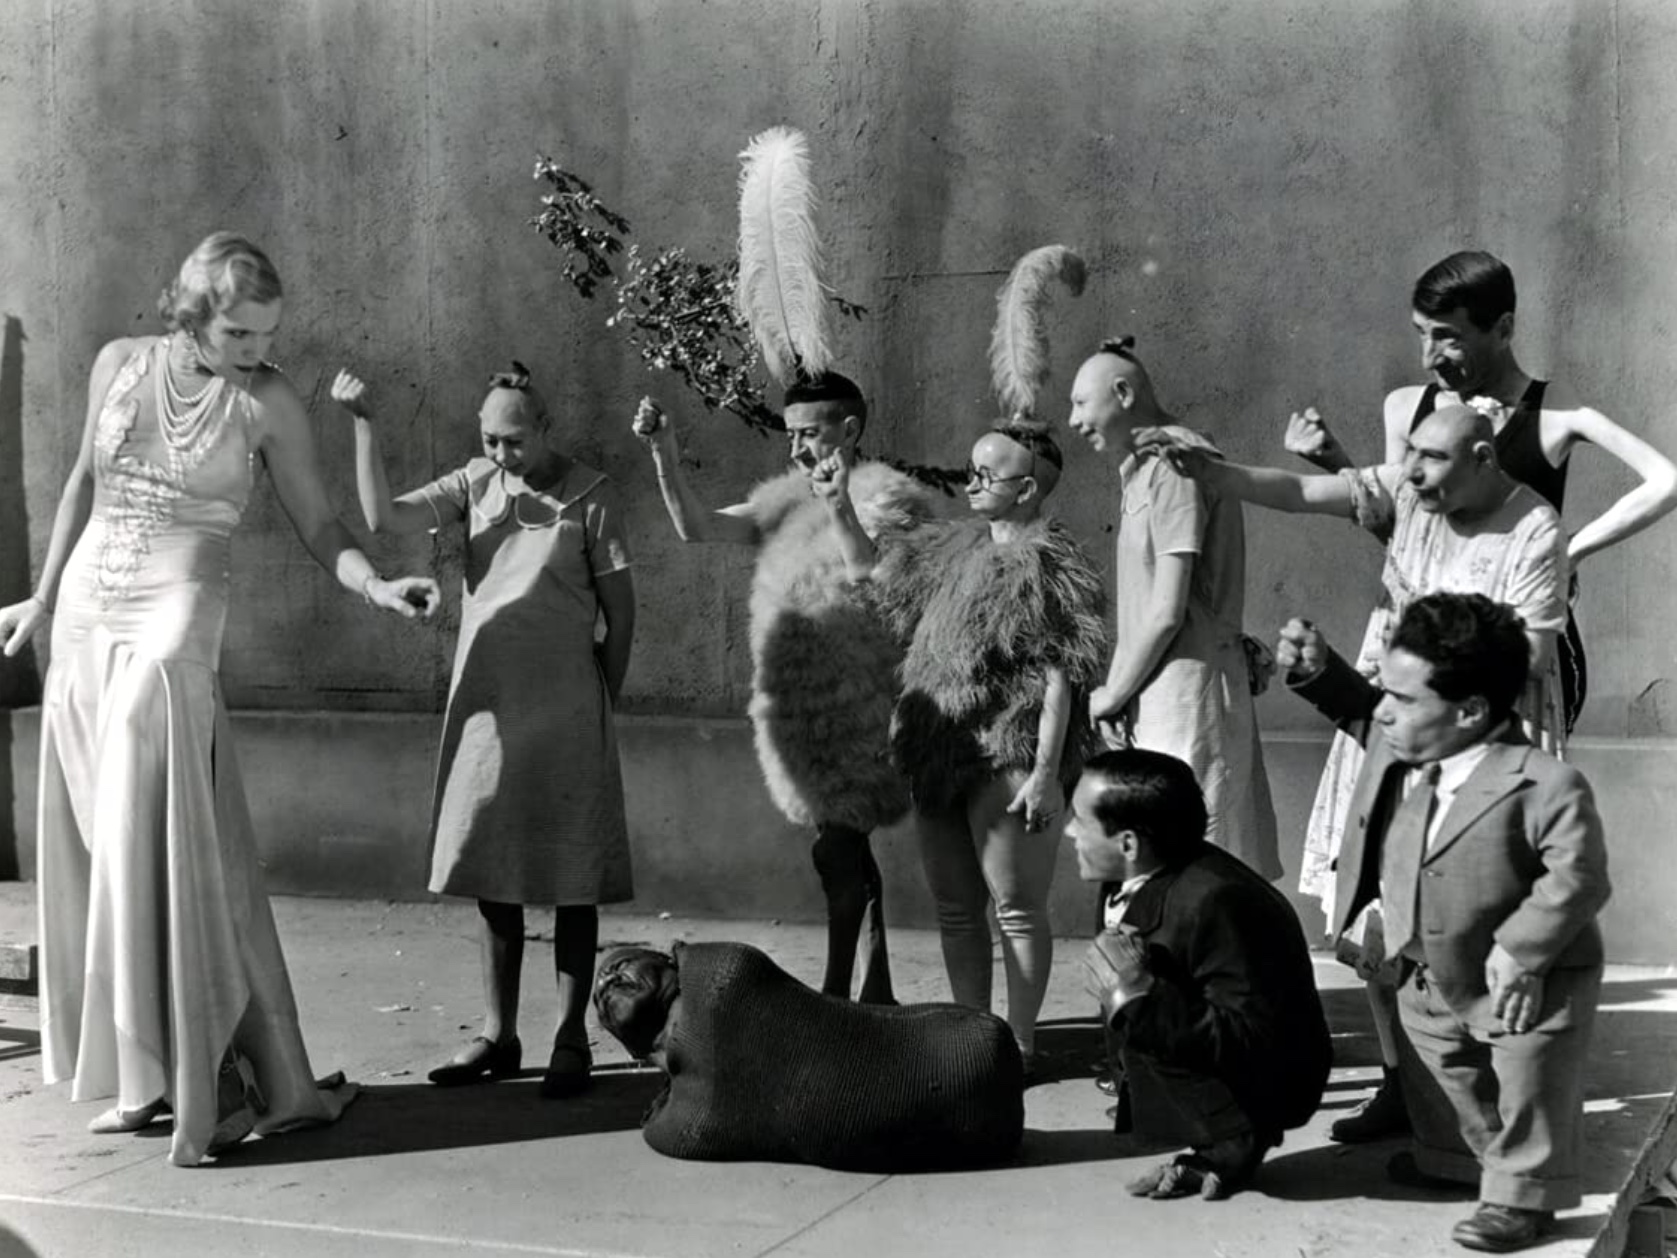 Cena em branco e preto do filme freaks apresenta um grupo de dez artistas de circo. Com exceção da mulher branca e loira, que usa um longo vestido branco e apresenta um olhar sério, todos os outros apresentam expressões de descontração.